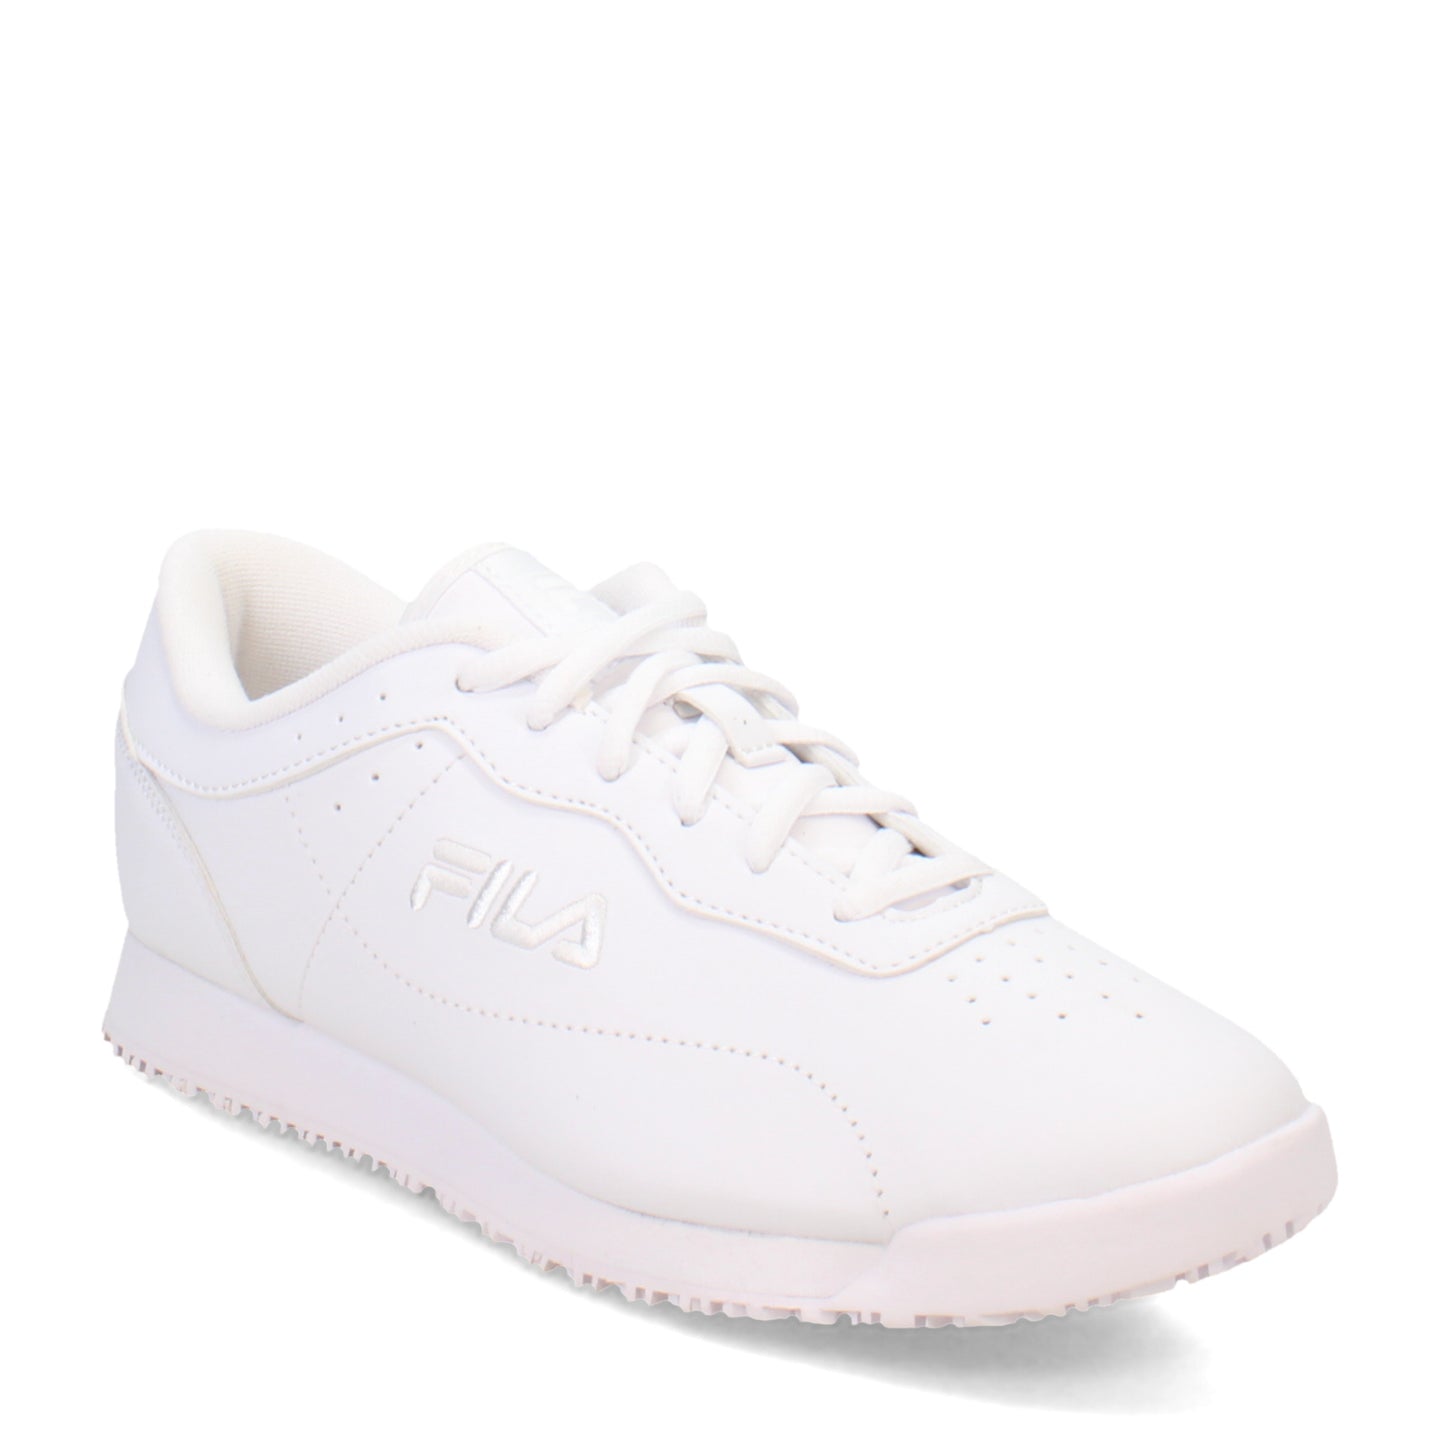 Peltz Shoes  Women's Fila Memory Viable SR Work Sneaker - Wide Width White 5SLW5000-100